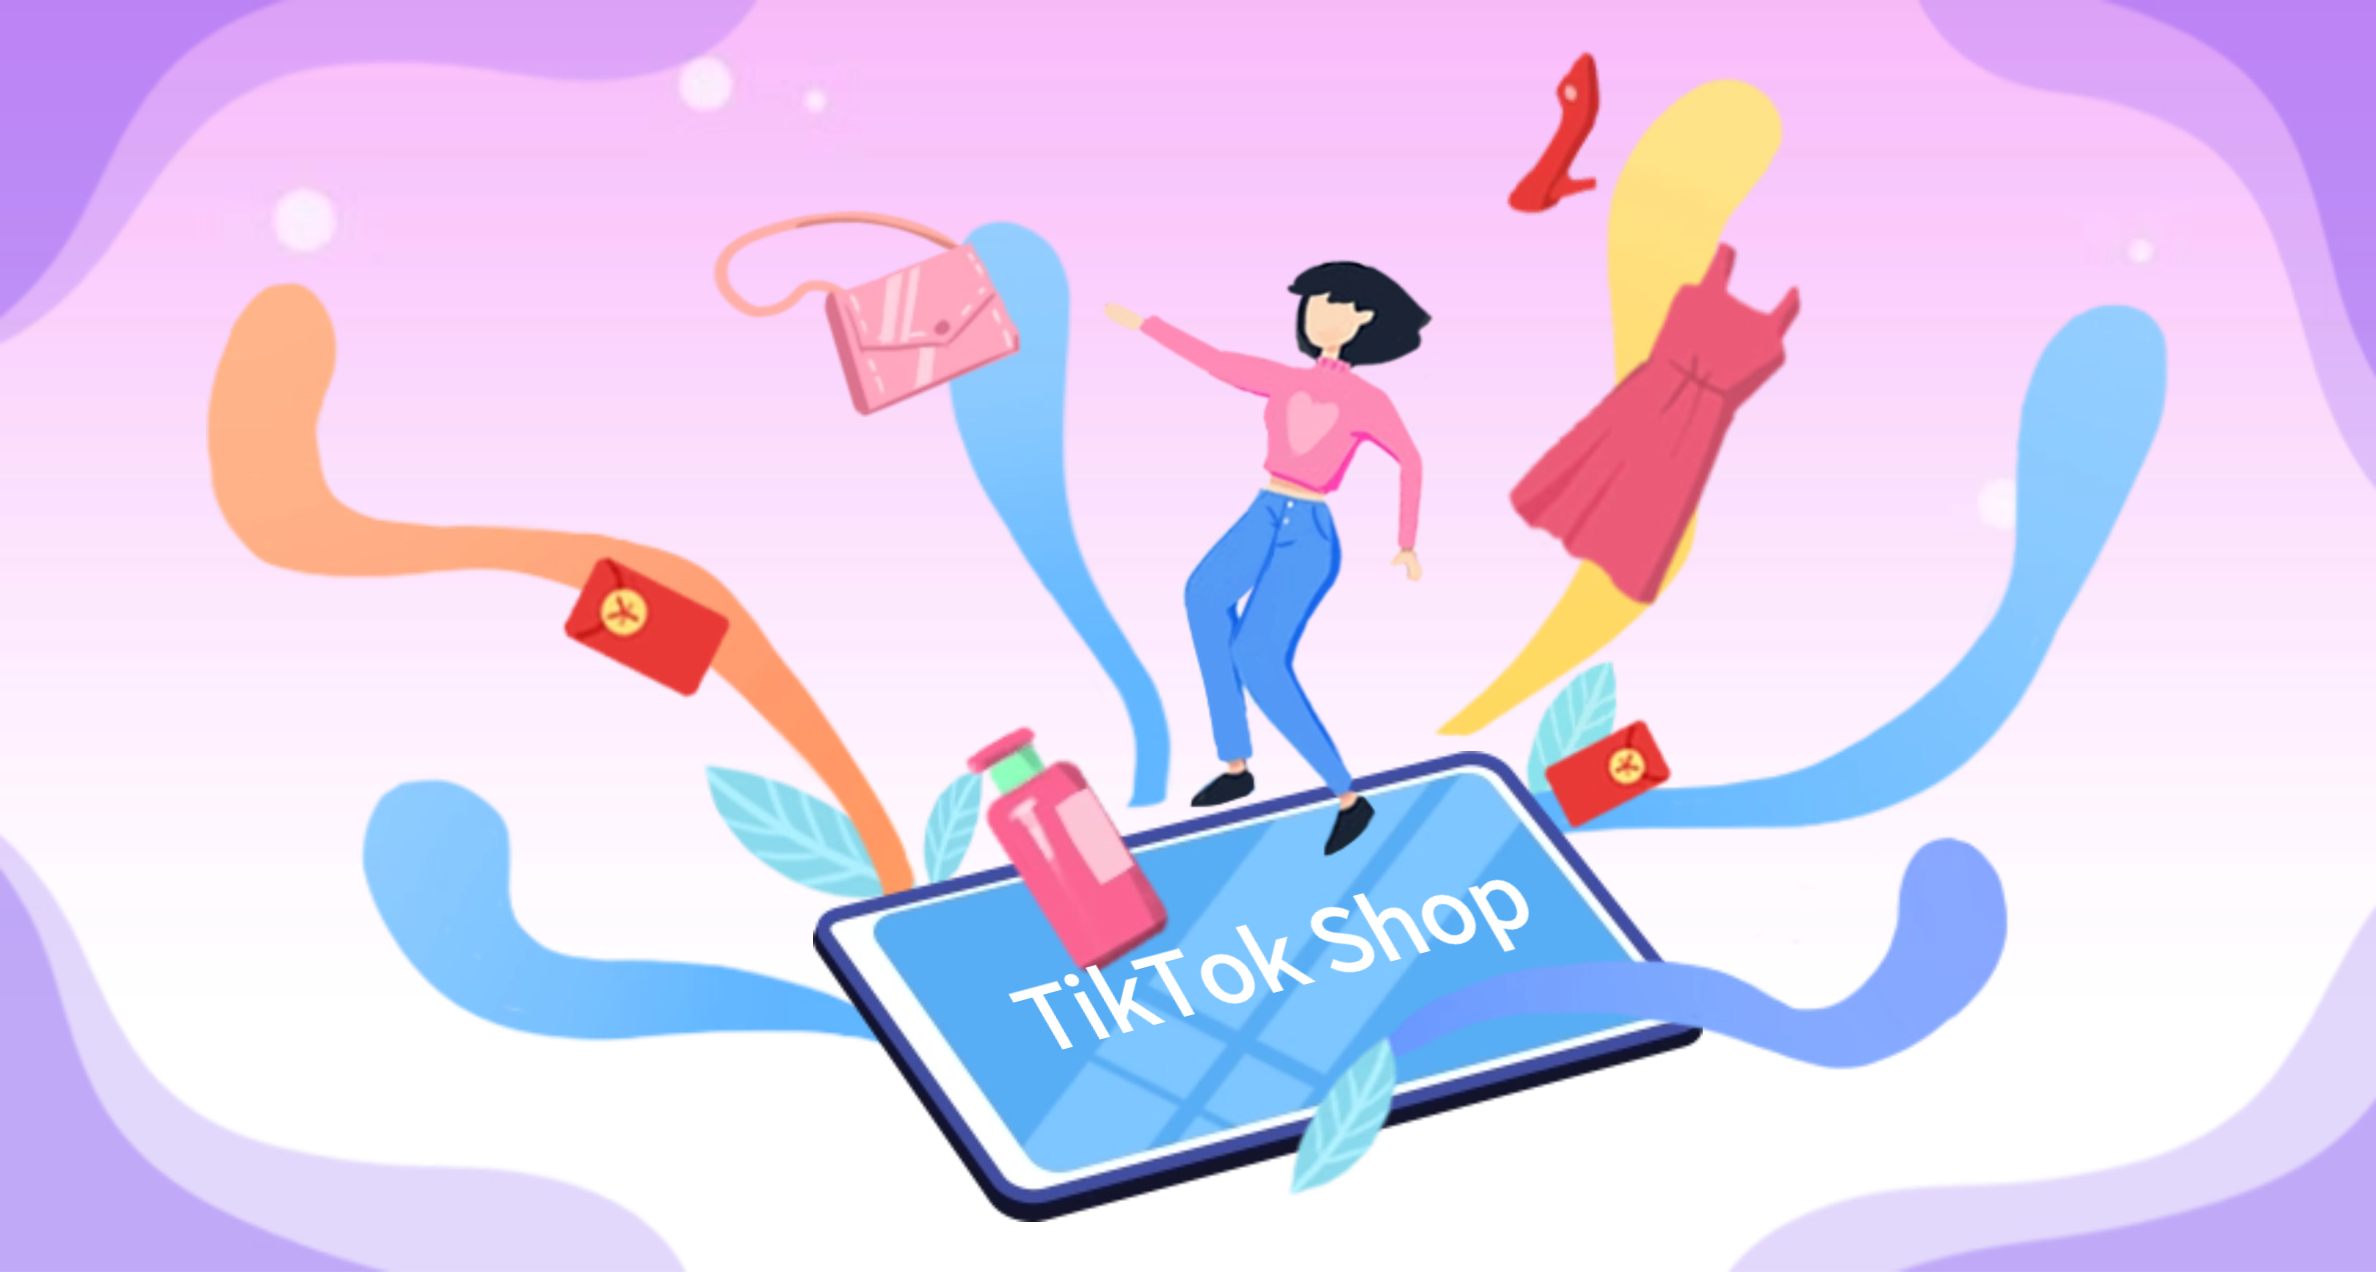 TikTok Shop站点的详细介绍和未来展望